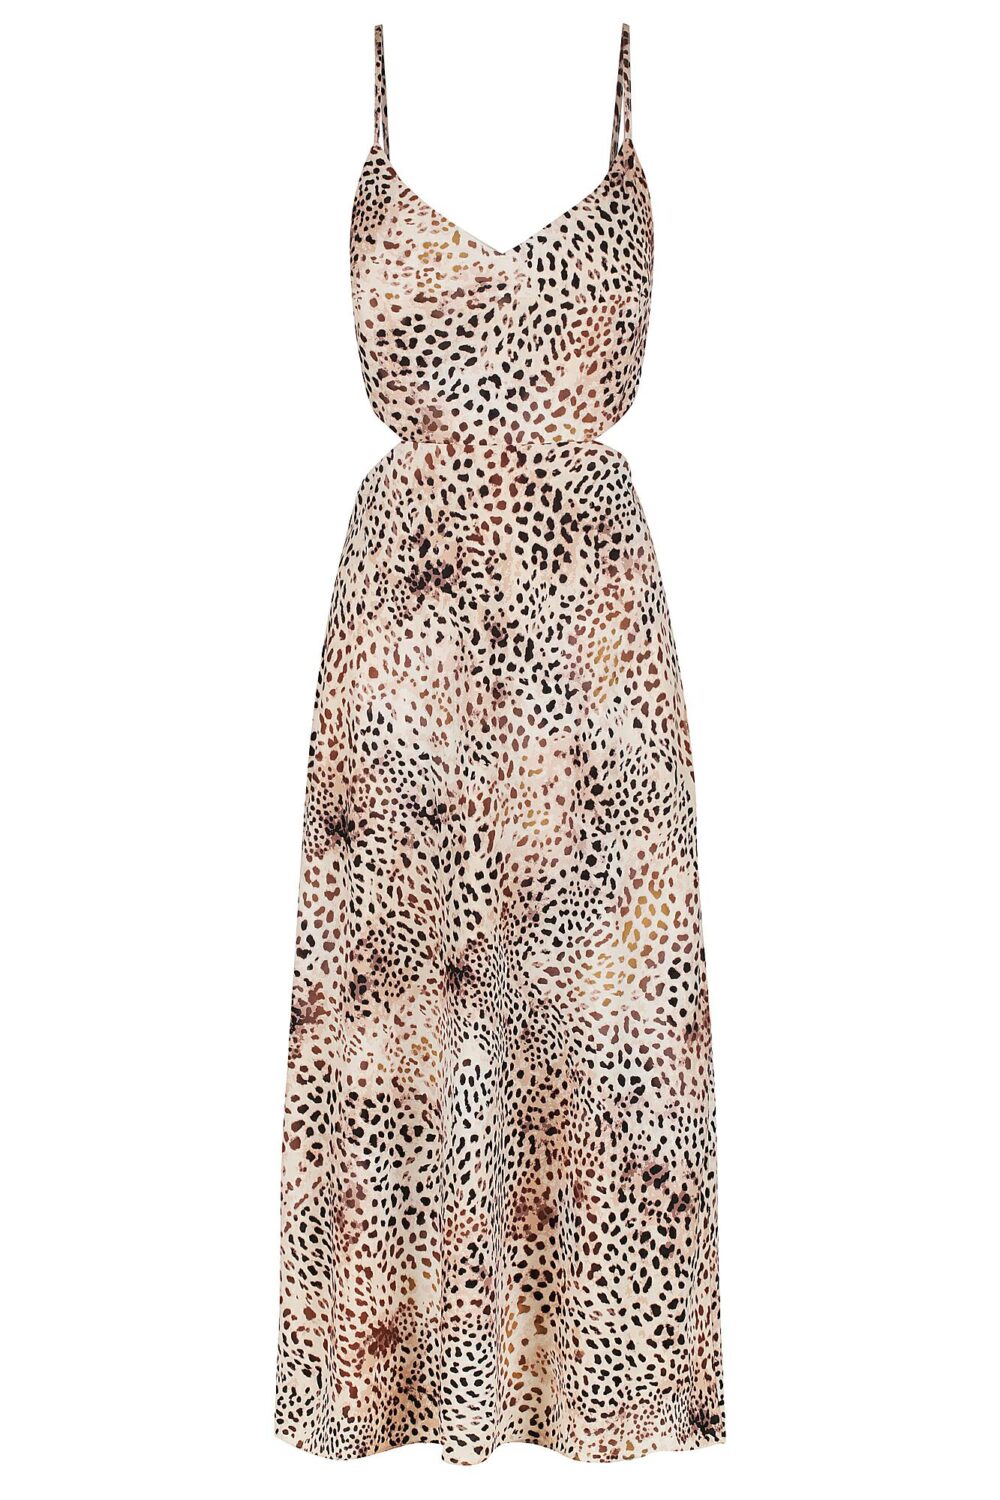 Ladies Dress Colour is Sand Cheetah Print